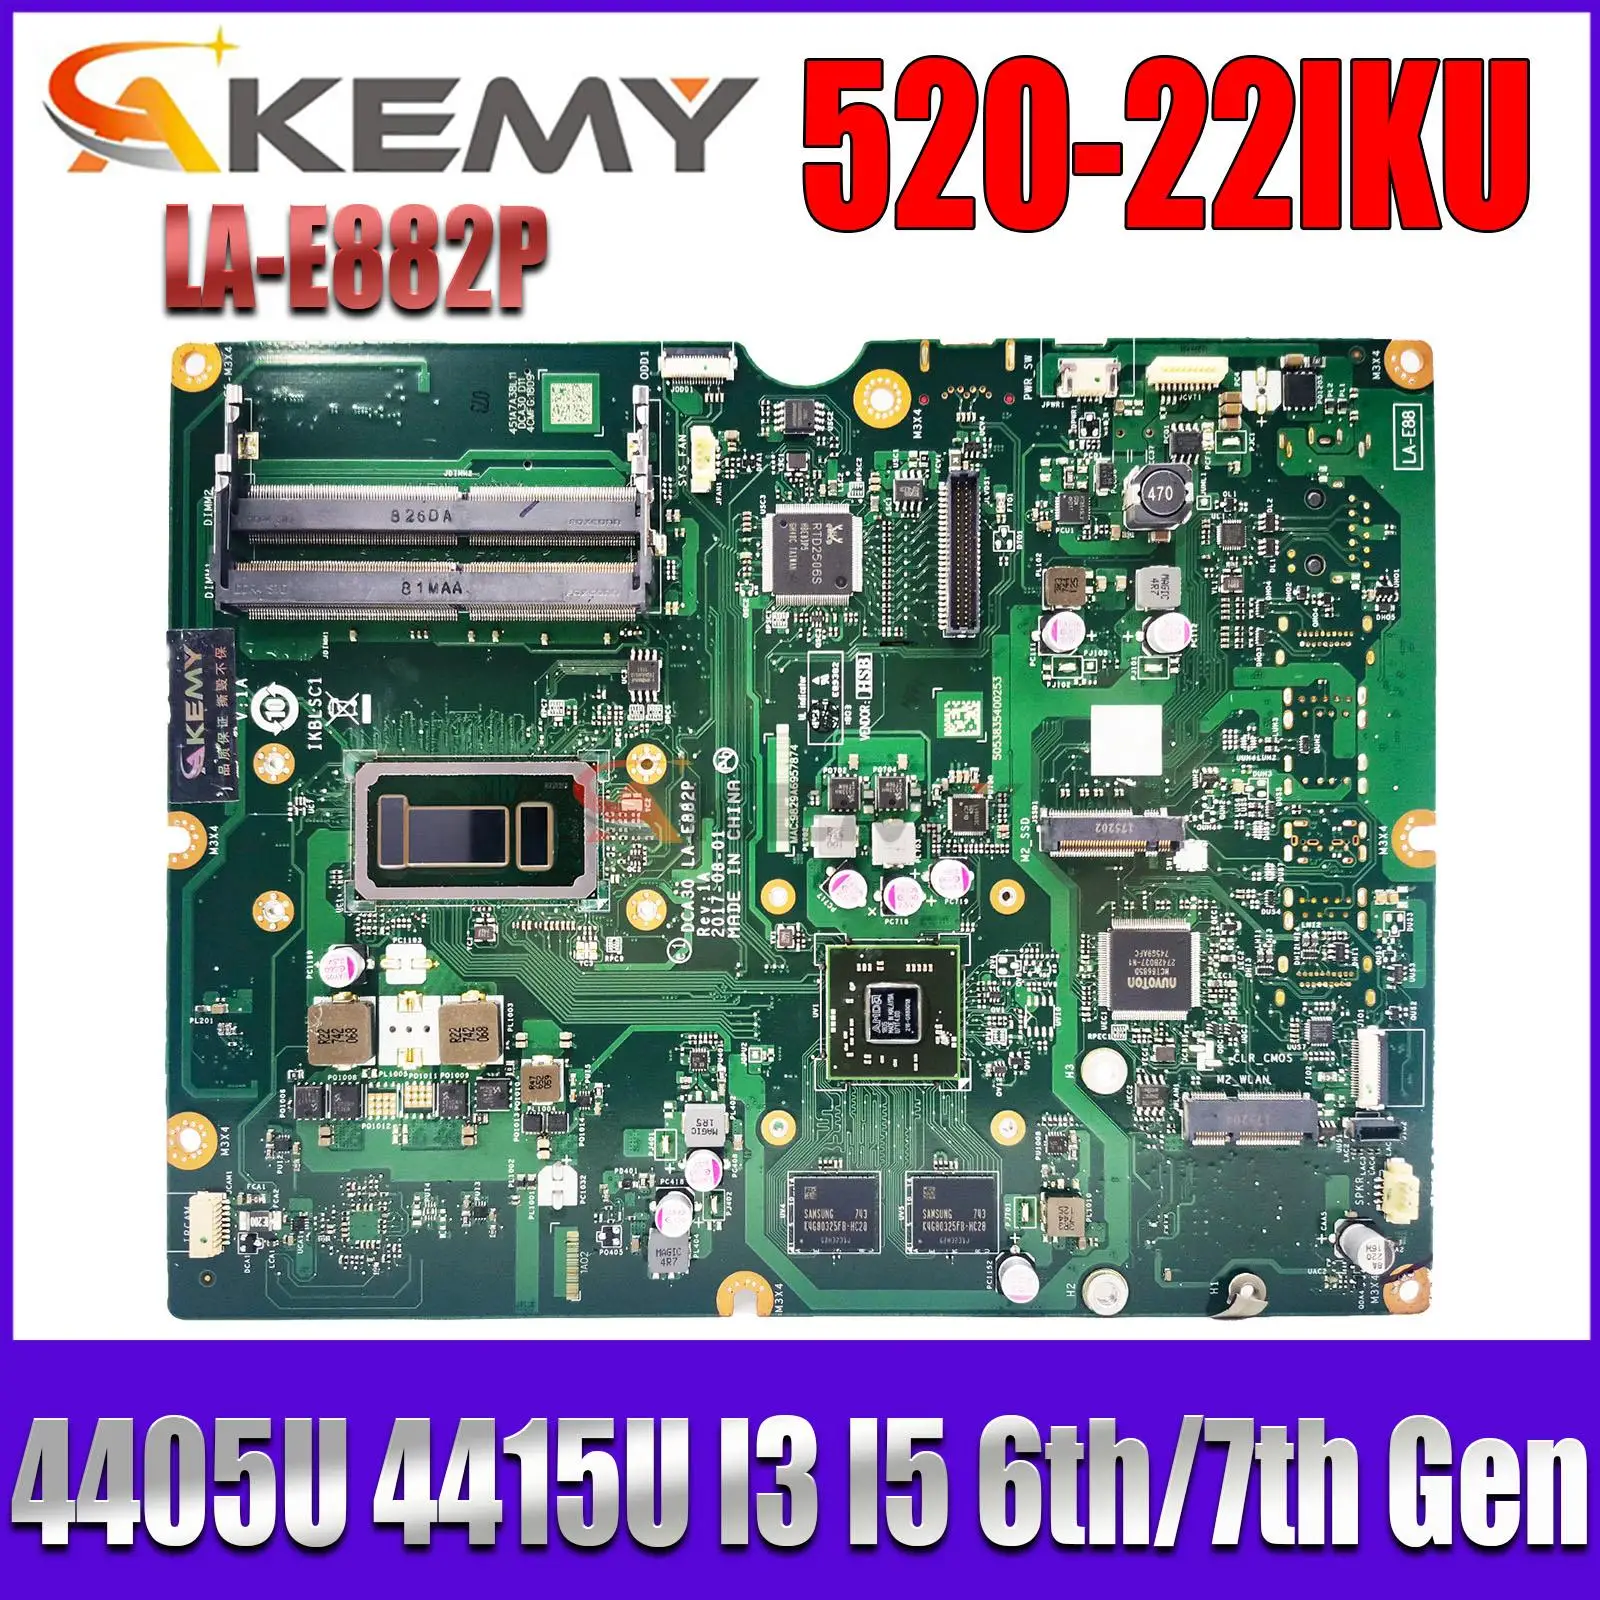 

LA-E882P for Lenovo AIO 520-22IKU 520-24IKU All-in-One motherboard Mainboard with 4405U 4415U I3 I5 CPU DDR4 V2G GPU